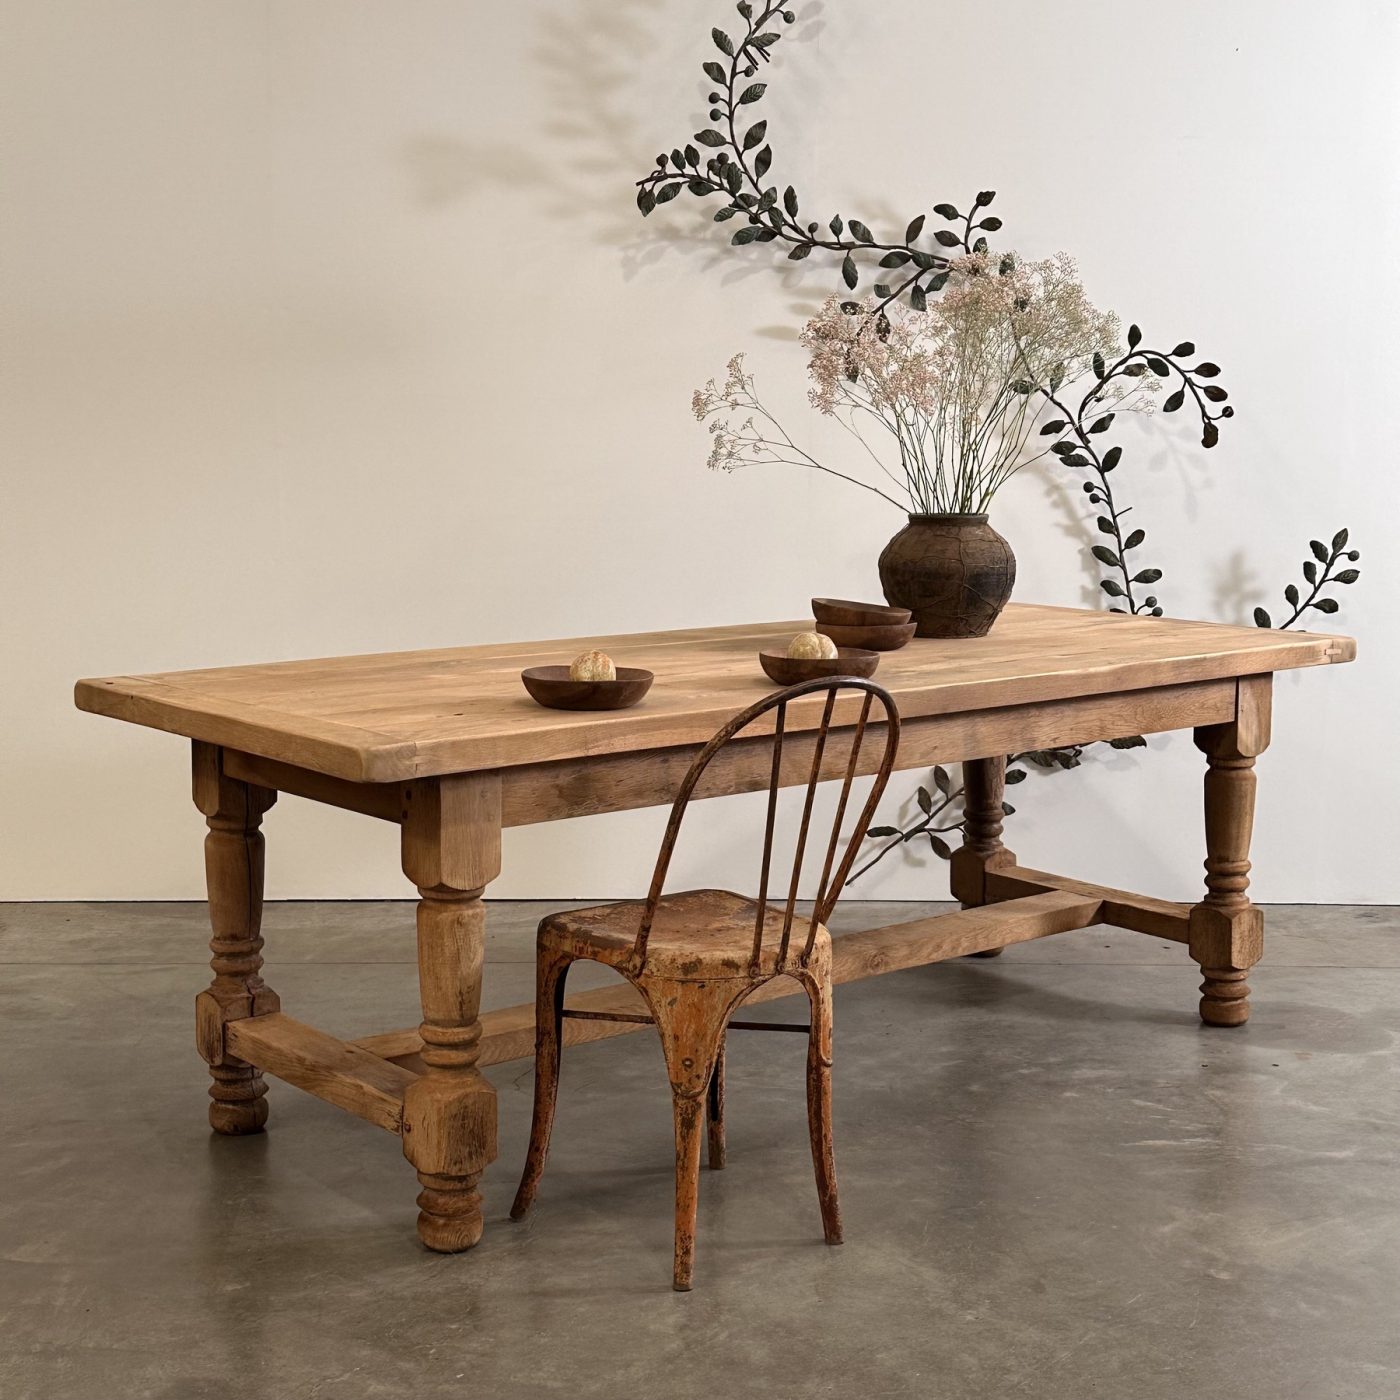 objet-vagabond-oak-table0003